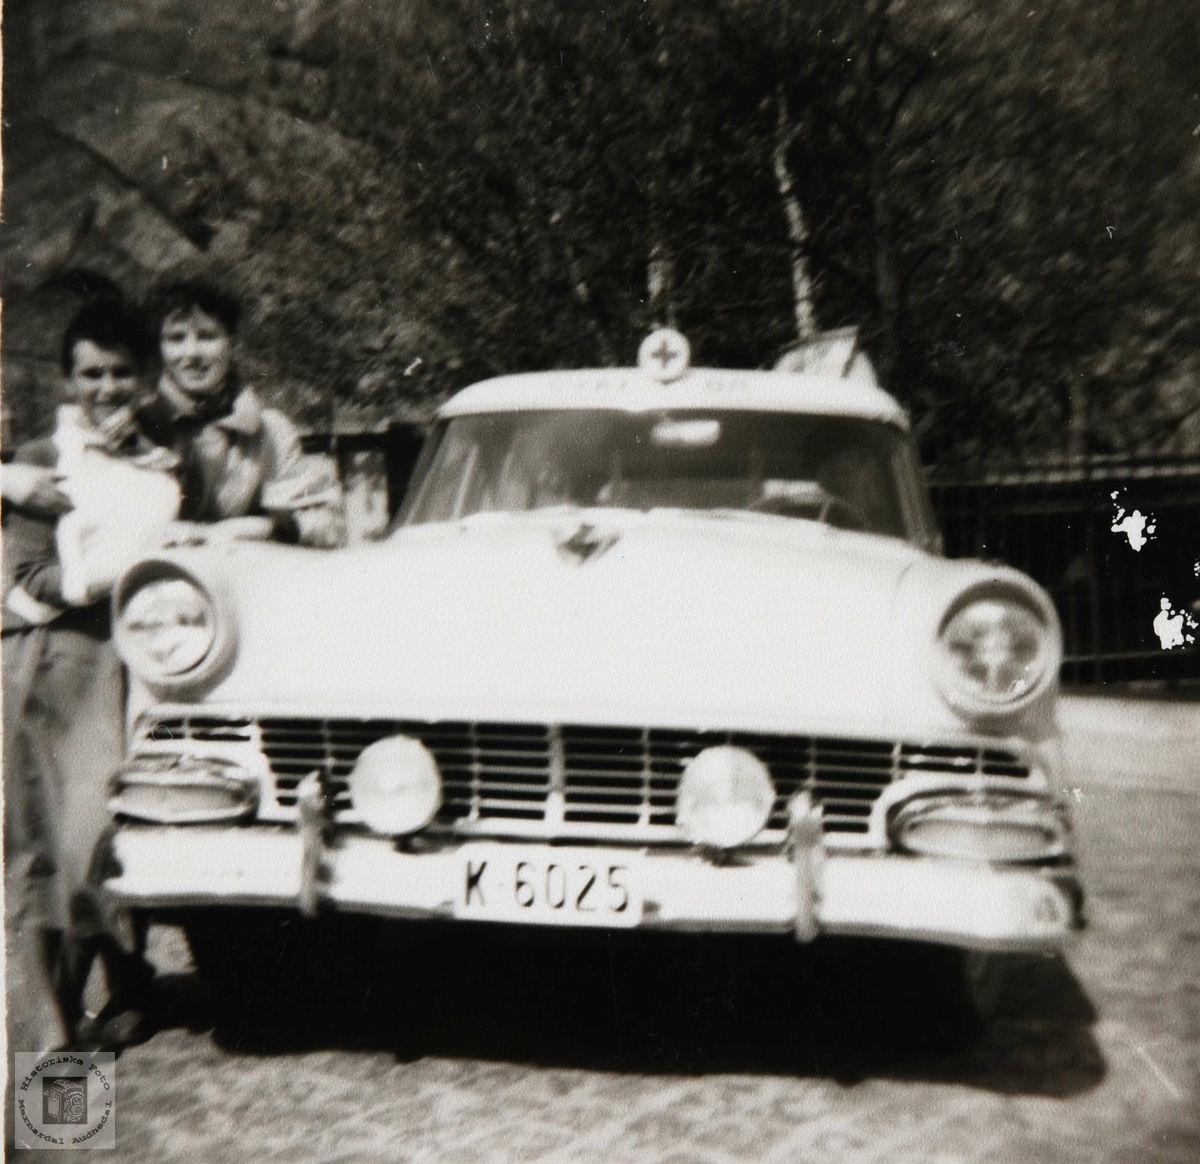 Den  "nye" sykebilen i Mandal ca 1955-60 kjørt av blandt andre Hermann Hegland fra Konsmo.
Amerikansk Ford årsmodell 1956. (1955 er nokså lik, men den hadde runde parklykter.)